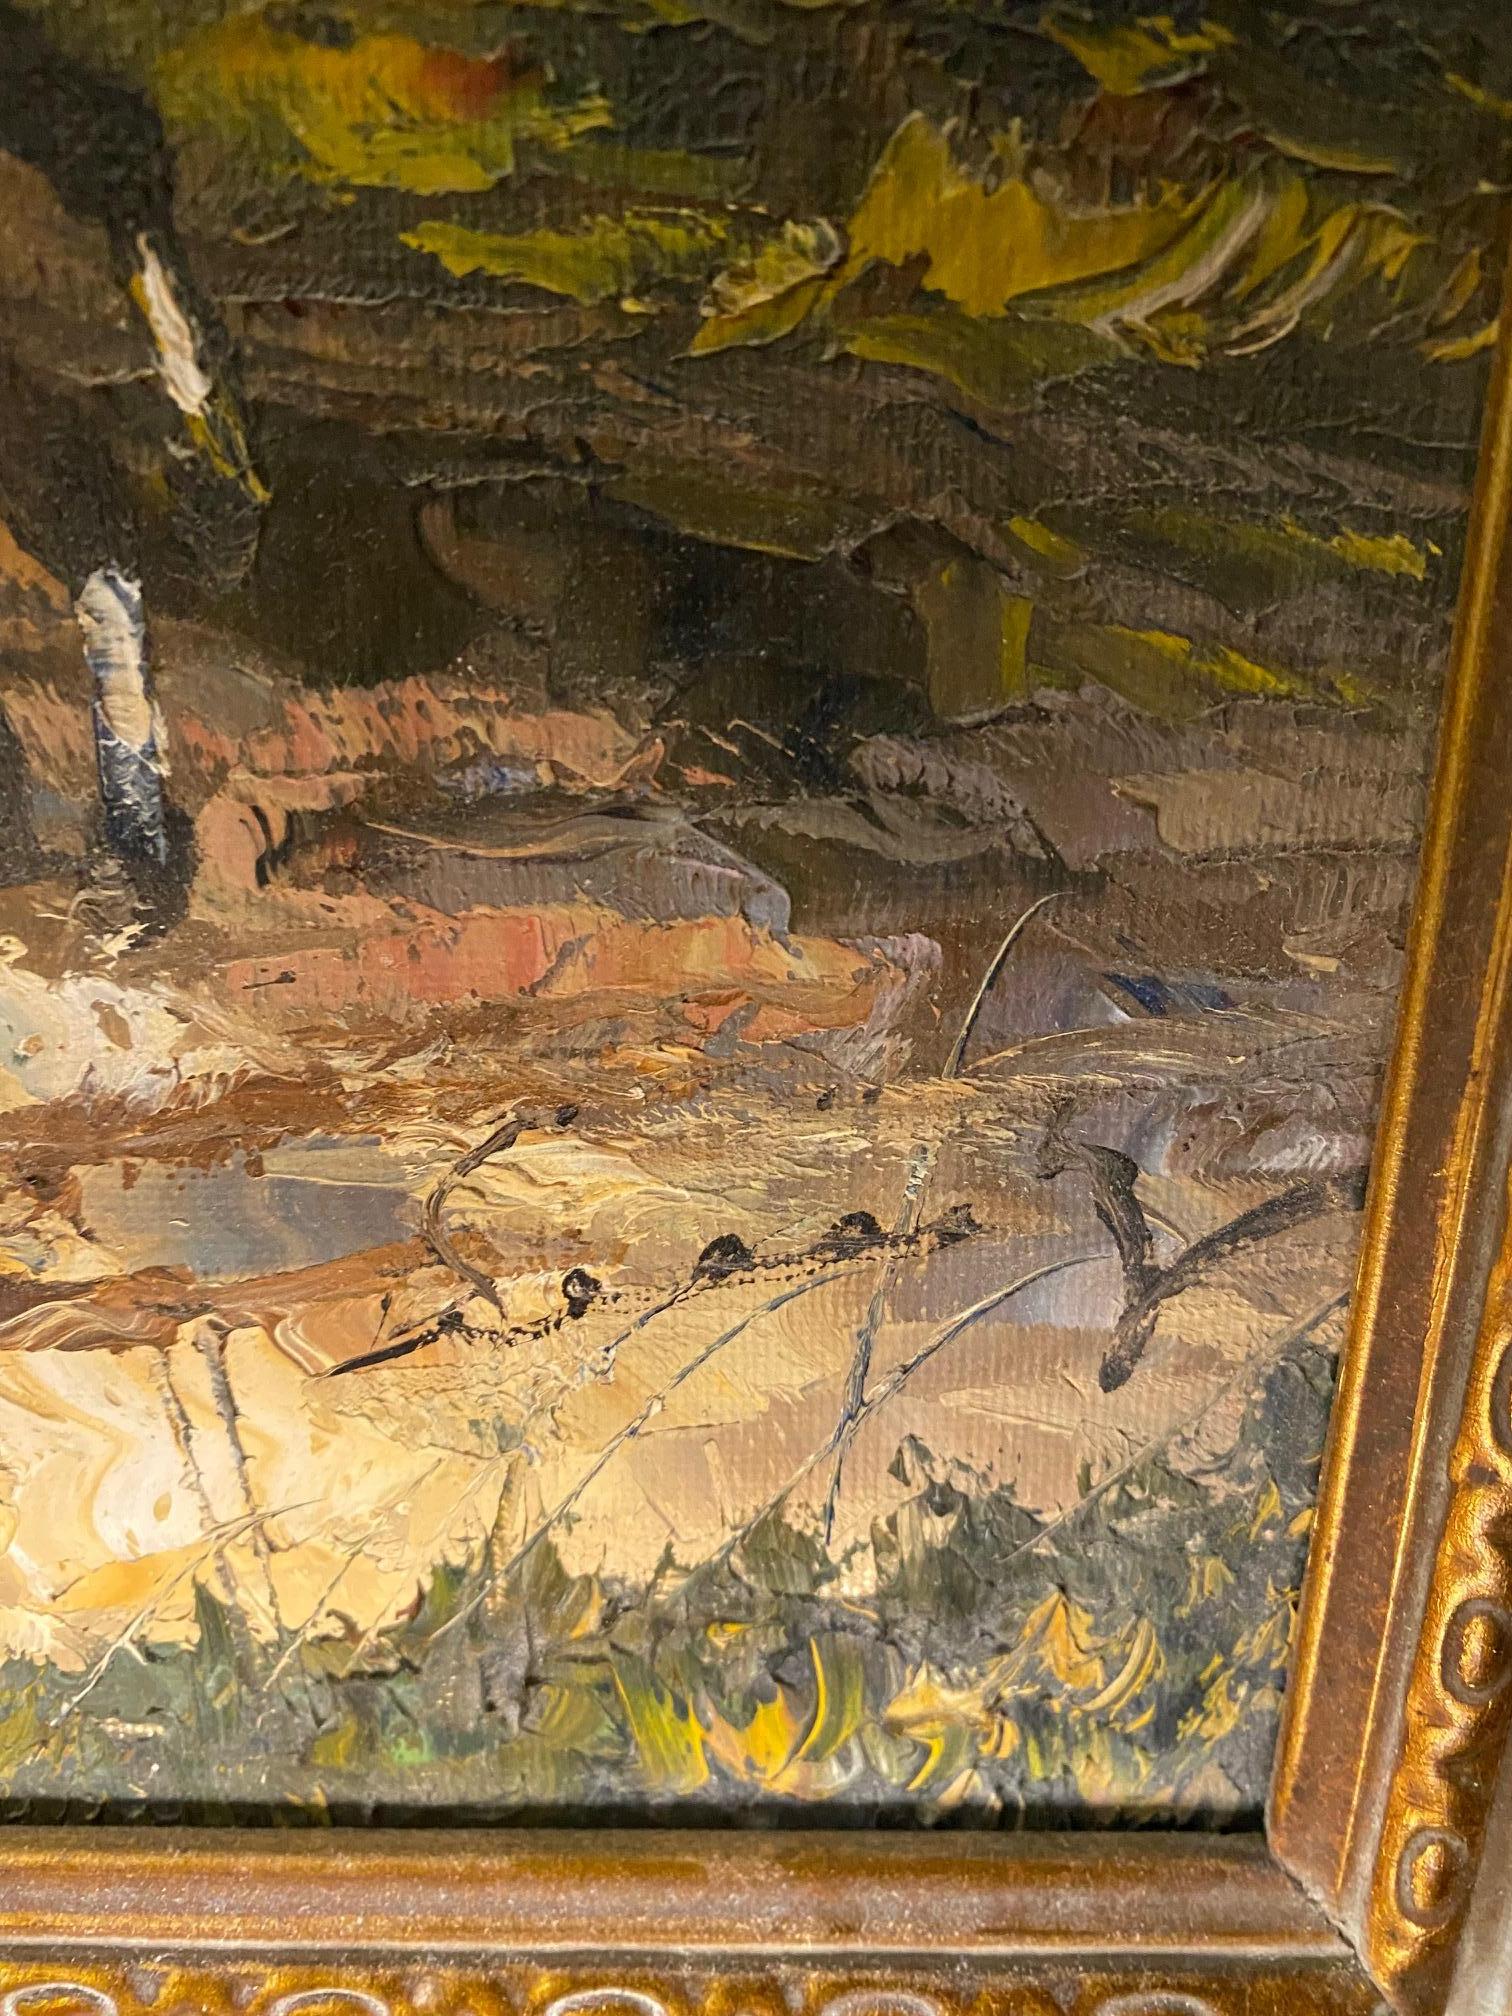 Öl auf Leinwand verkauft mit Rahmen 
Gesamtgröße mit Rahmen 40x50 cm
Unterzeichnet
Künstler unbekannt aus der Galerie 